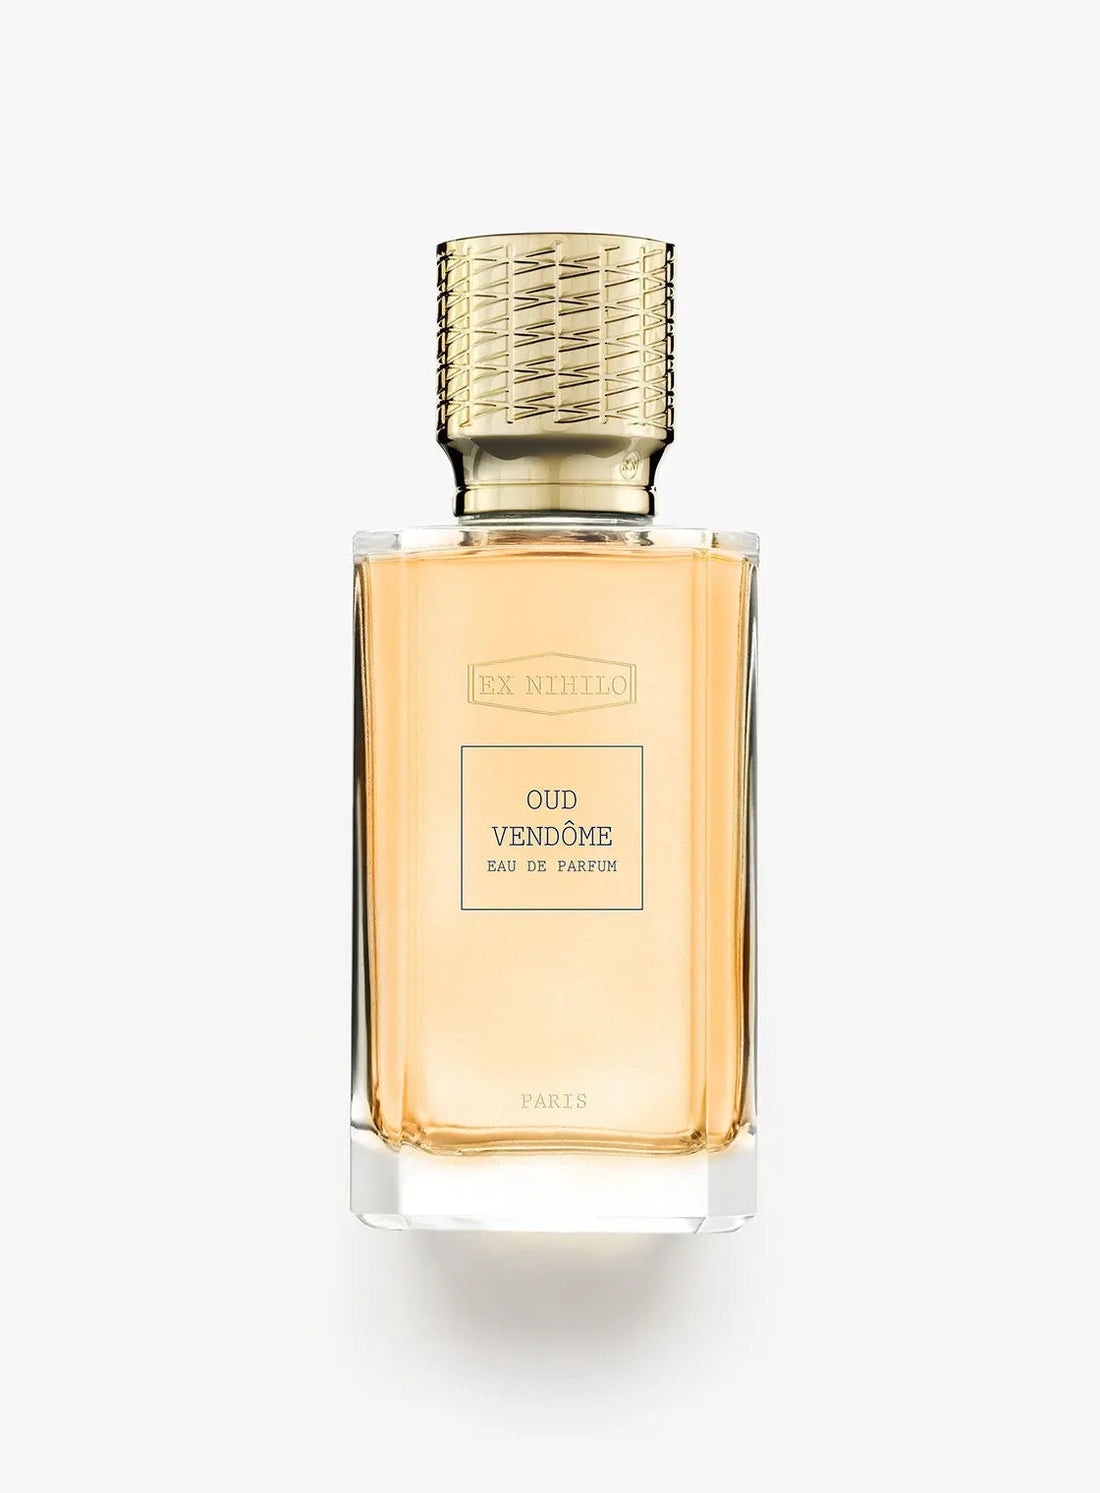 Ex nihilo Oud Vendome eau de parfum - 50 ml